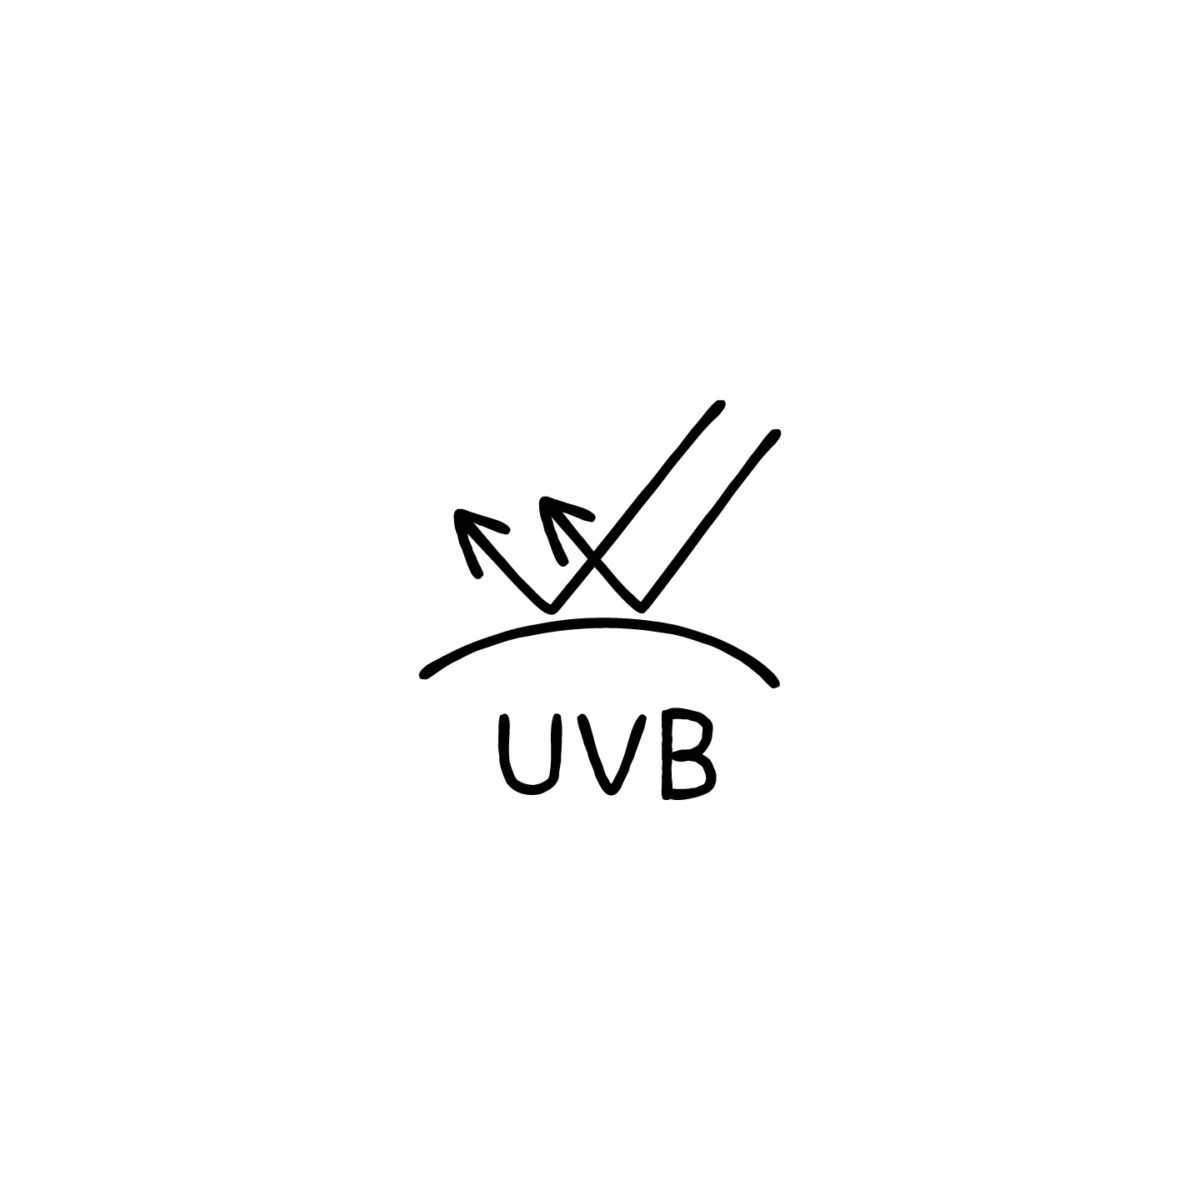 UVカットUVBのアイコン